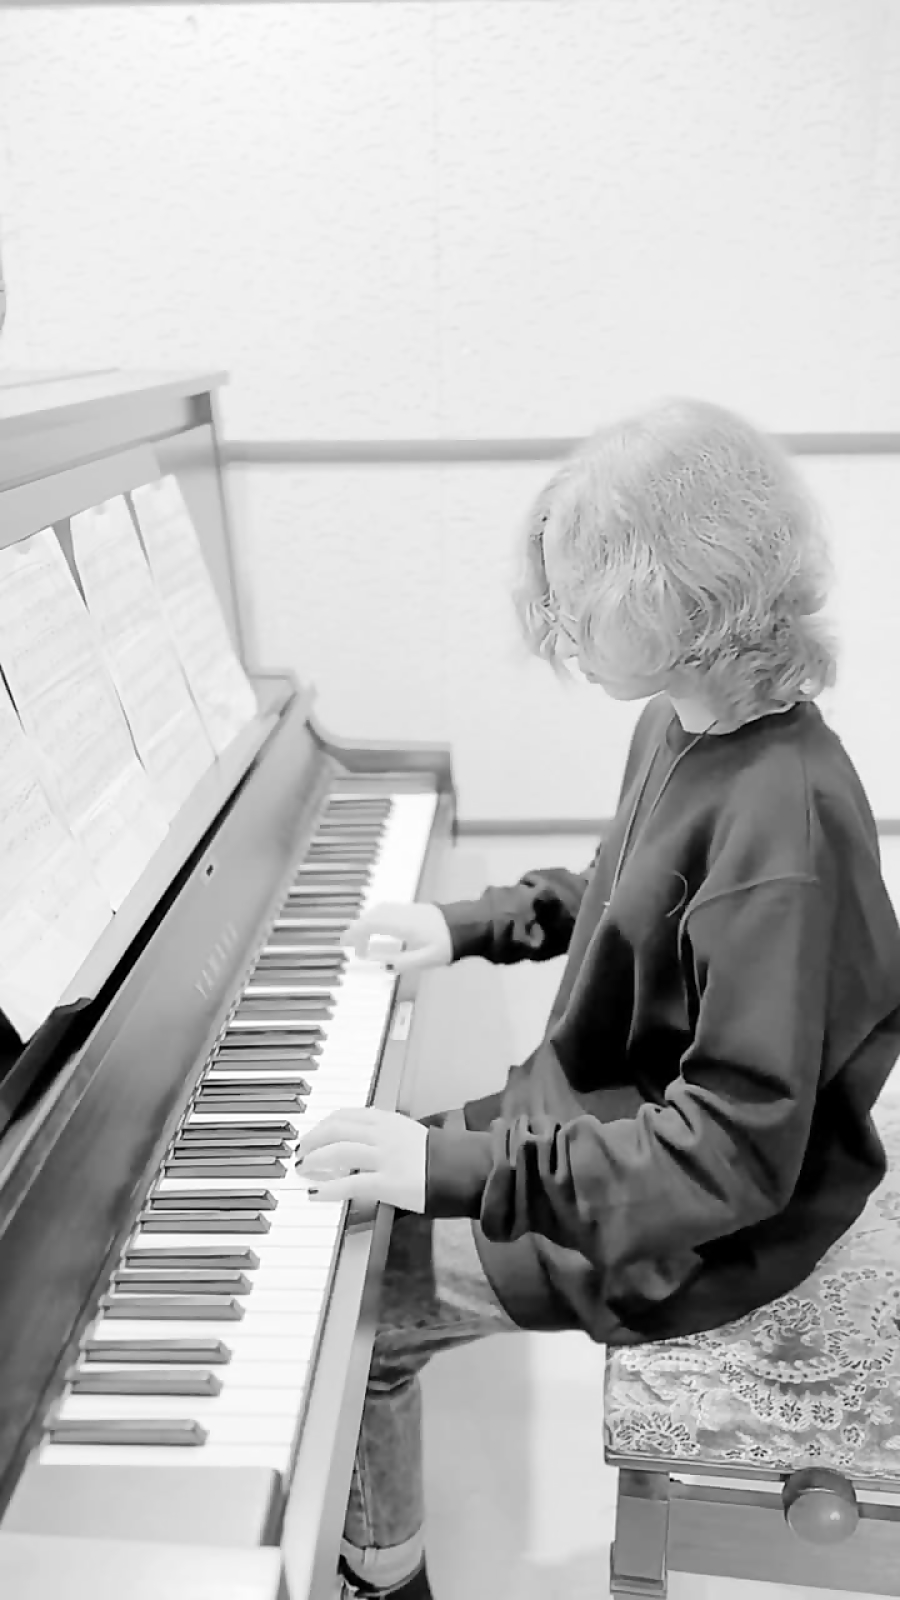 آموزش پیانو در نخشبی آکادمی | اجرای زیبای آهنگ سلطان قلبها با پیانو